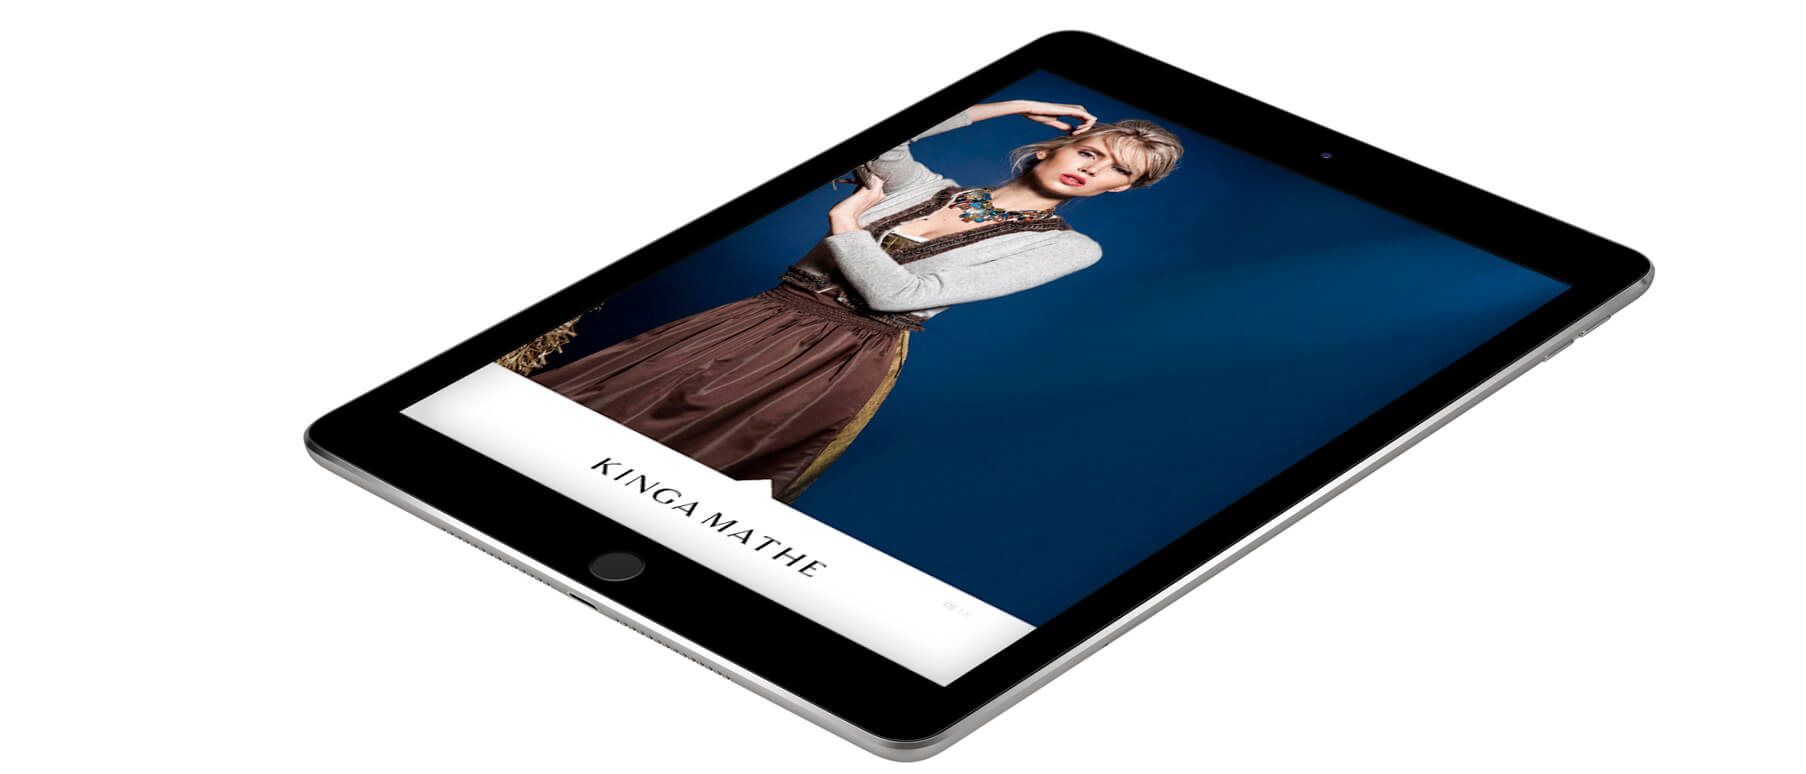 Mockup der Kinga Mathe-Website dargestellt in einem iPad, Startbild